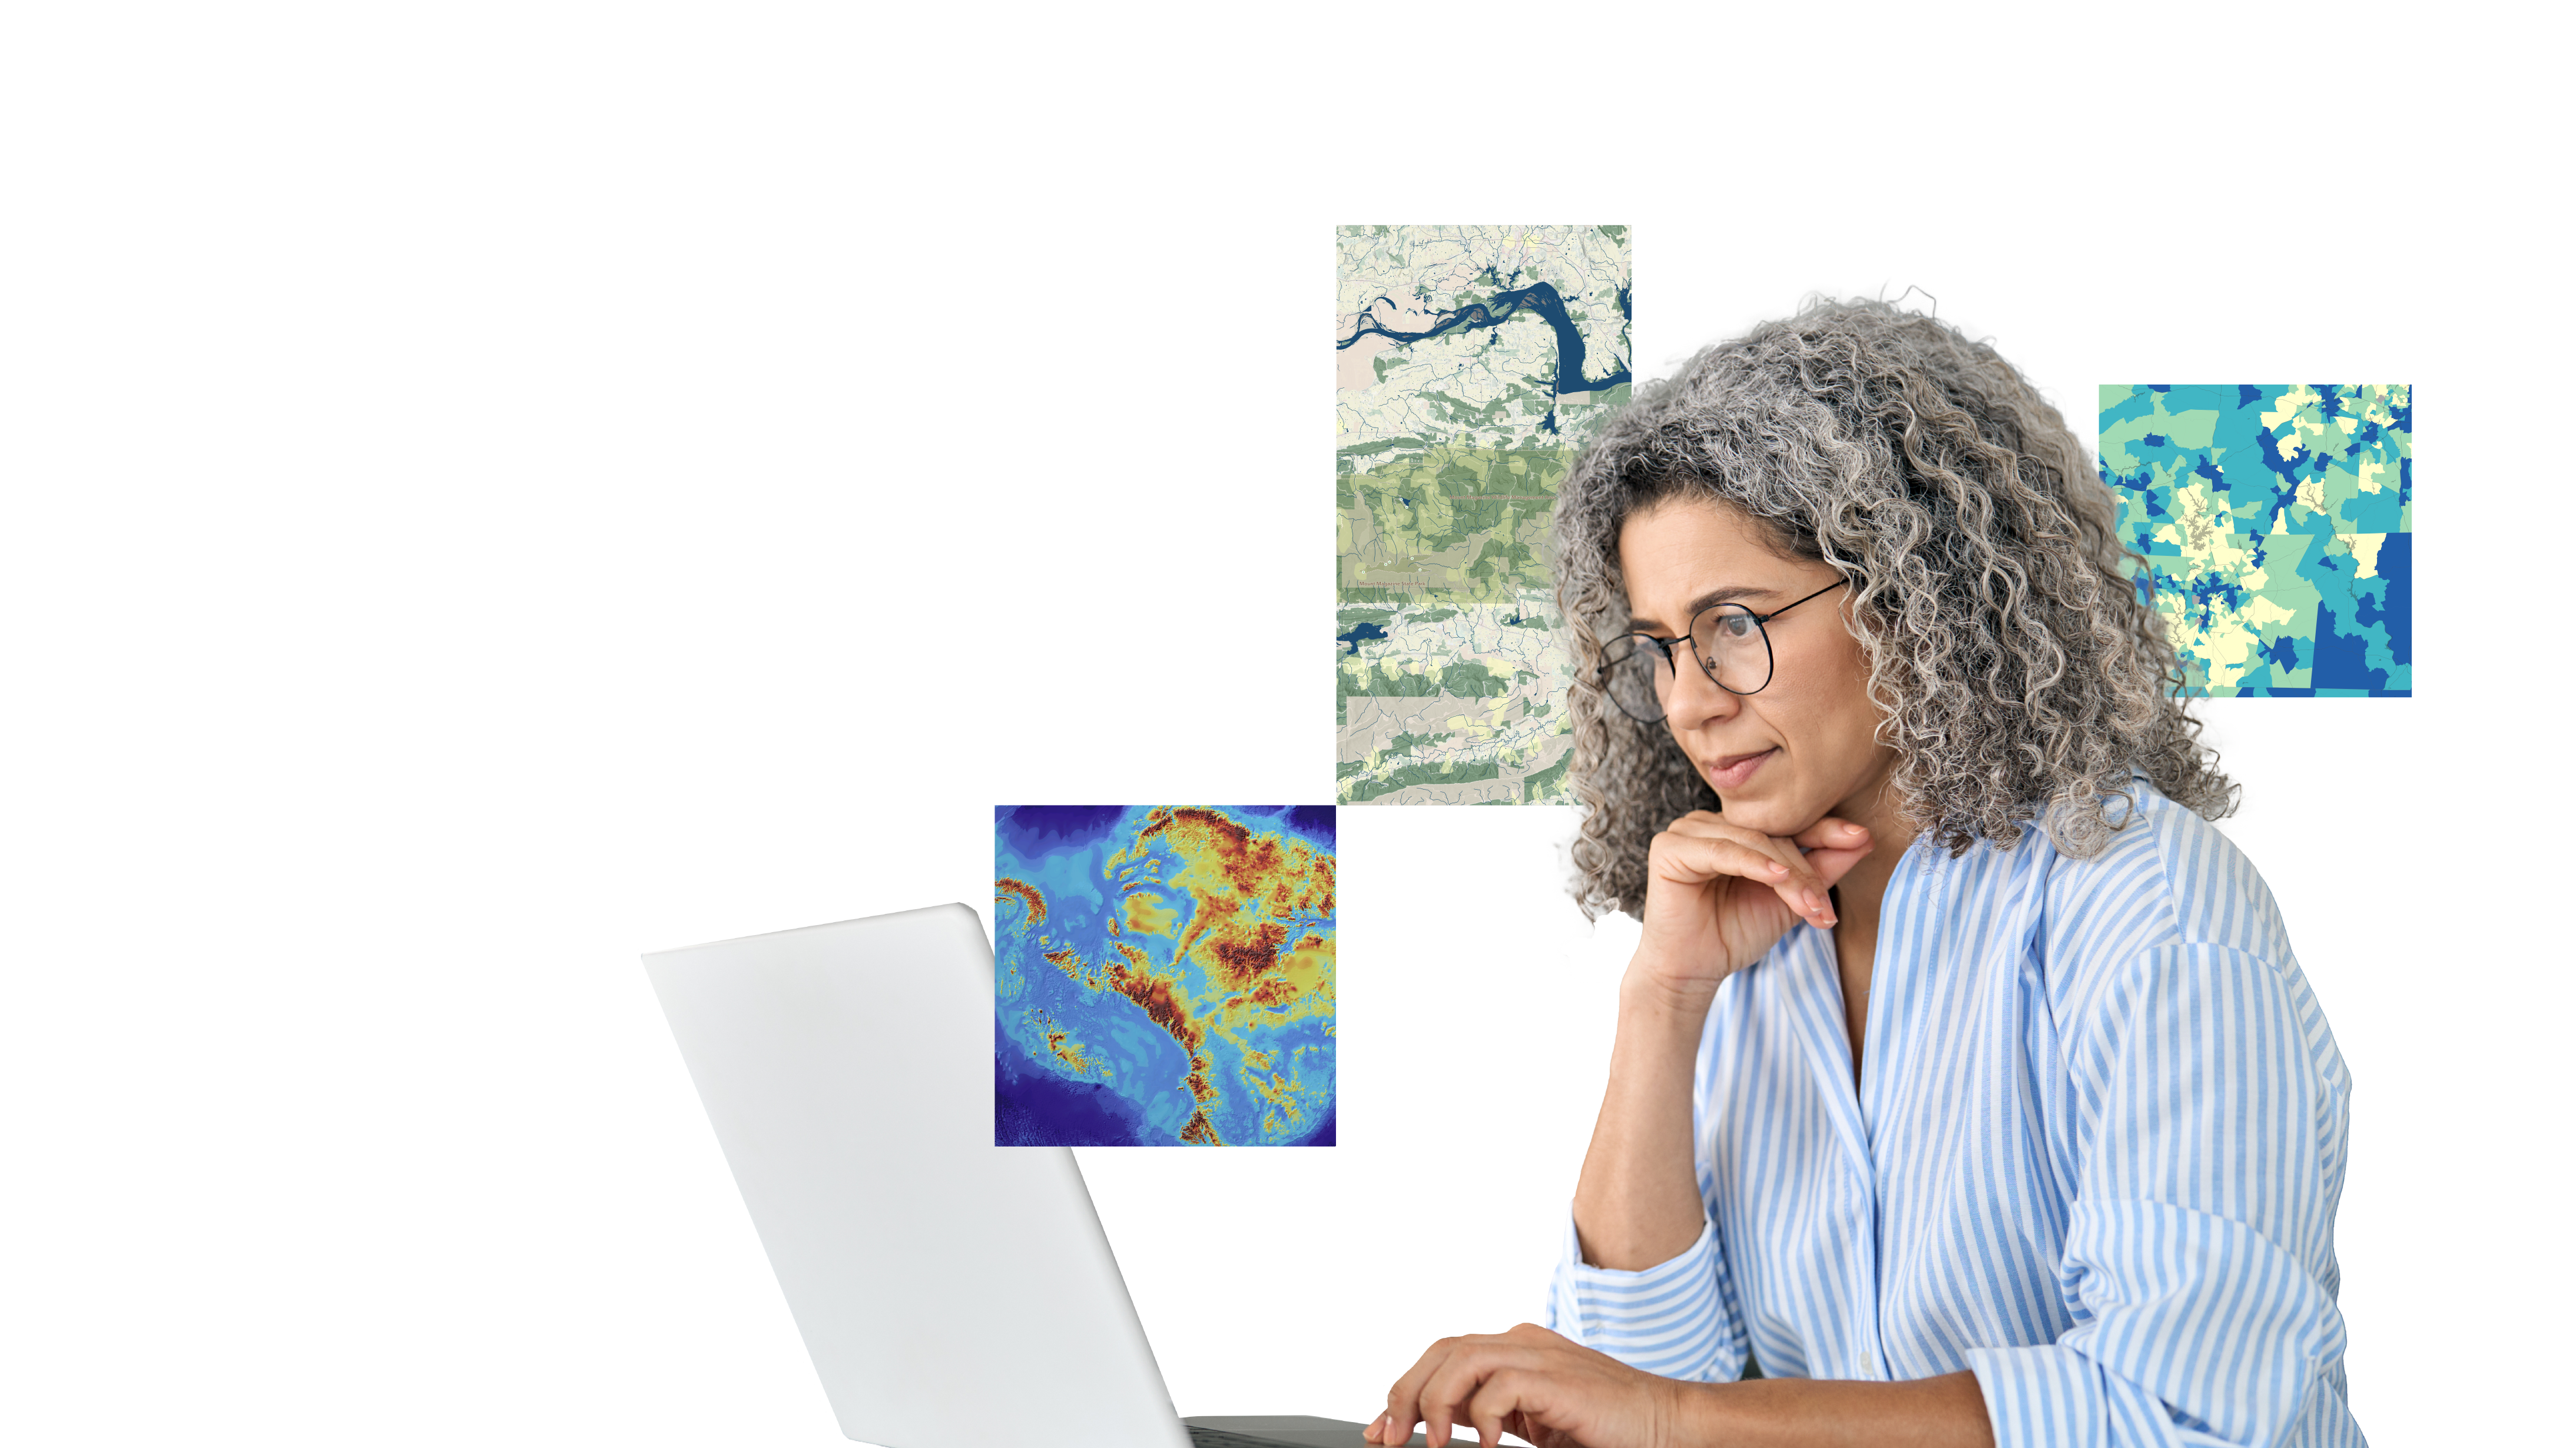 Uma pessoa usando óculos e uma camisa de colarinho listrado azul olhando pensativamente para a tela de um laptop, sobreposta por três pequenos mapas coloridos projetados